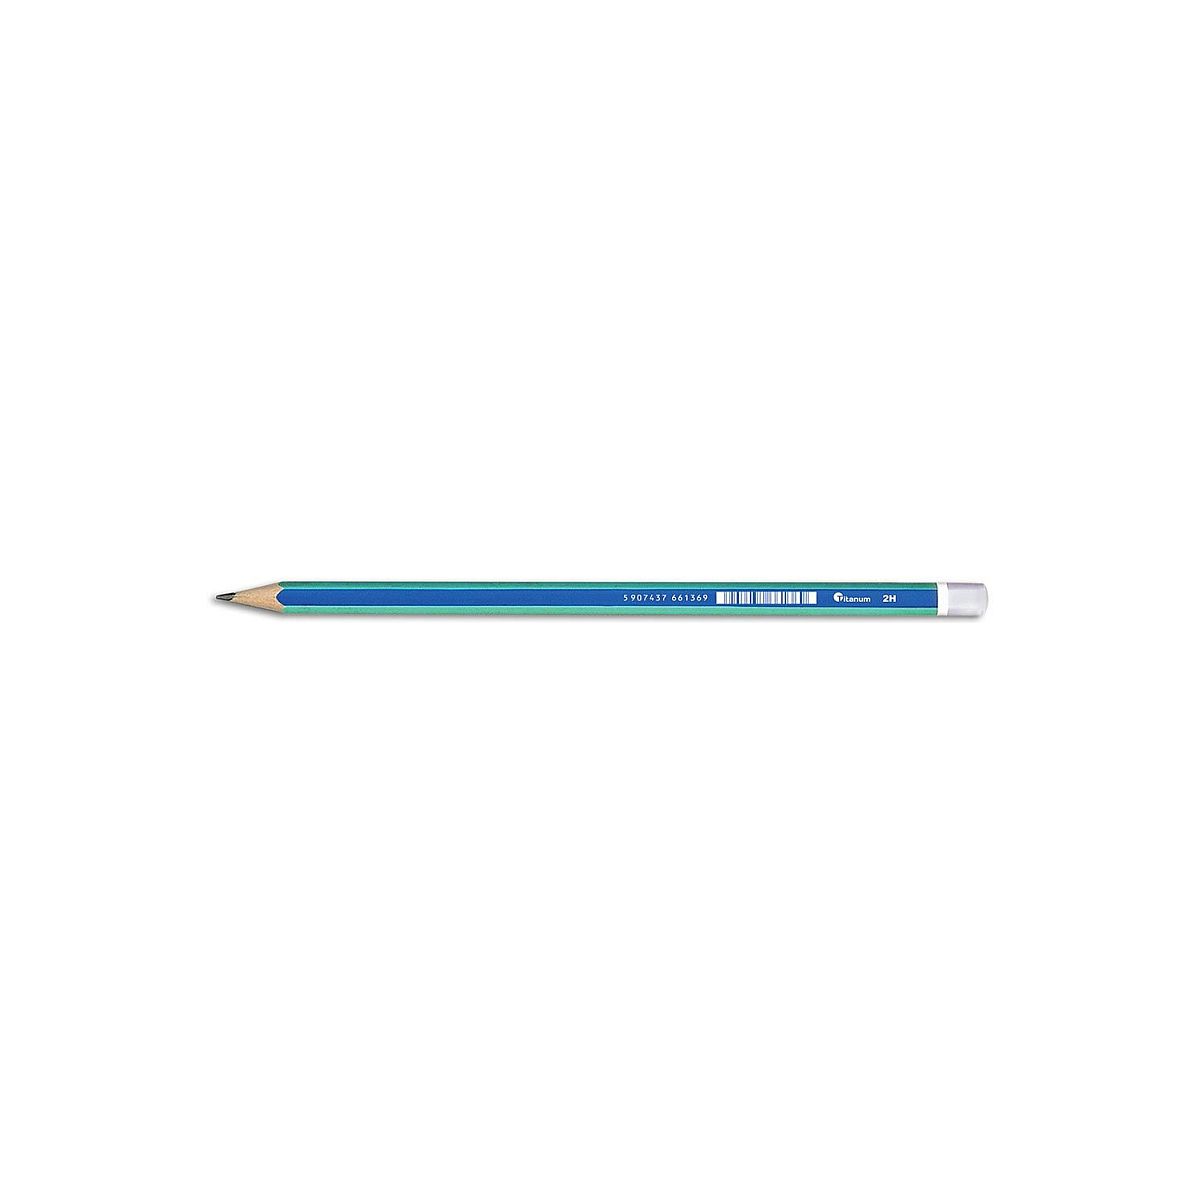 Ołówek Titanum bez gumki 2H 2H (AS034B)